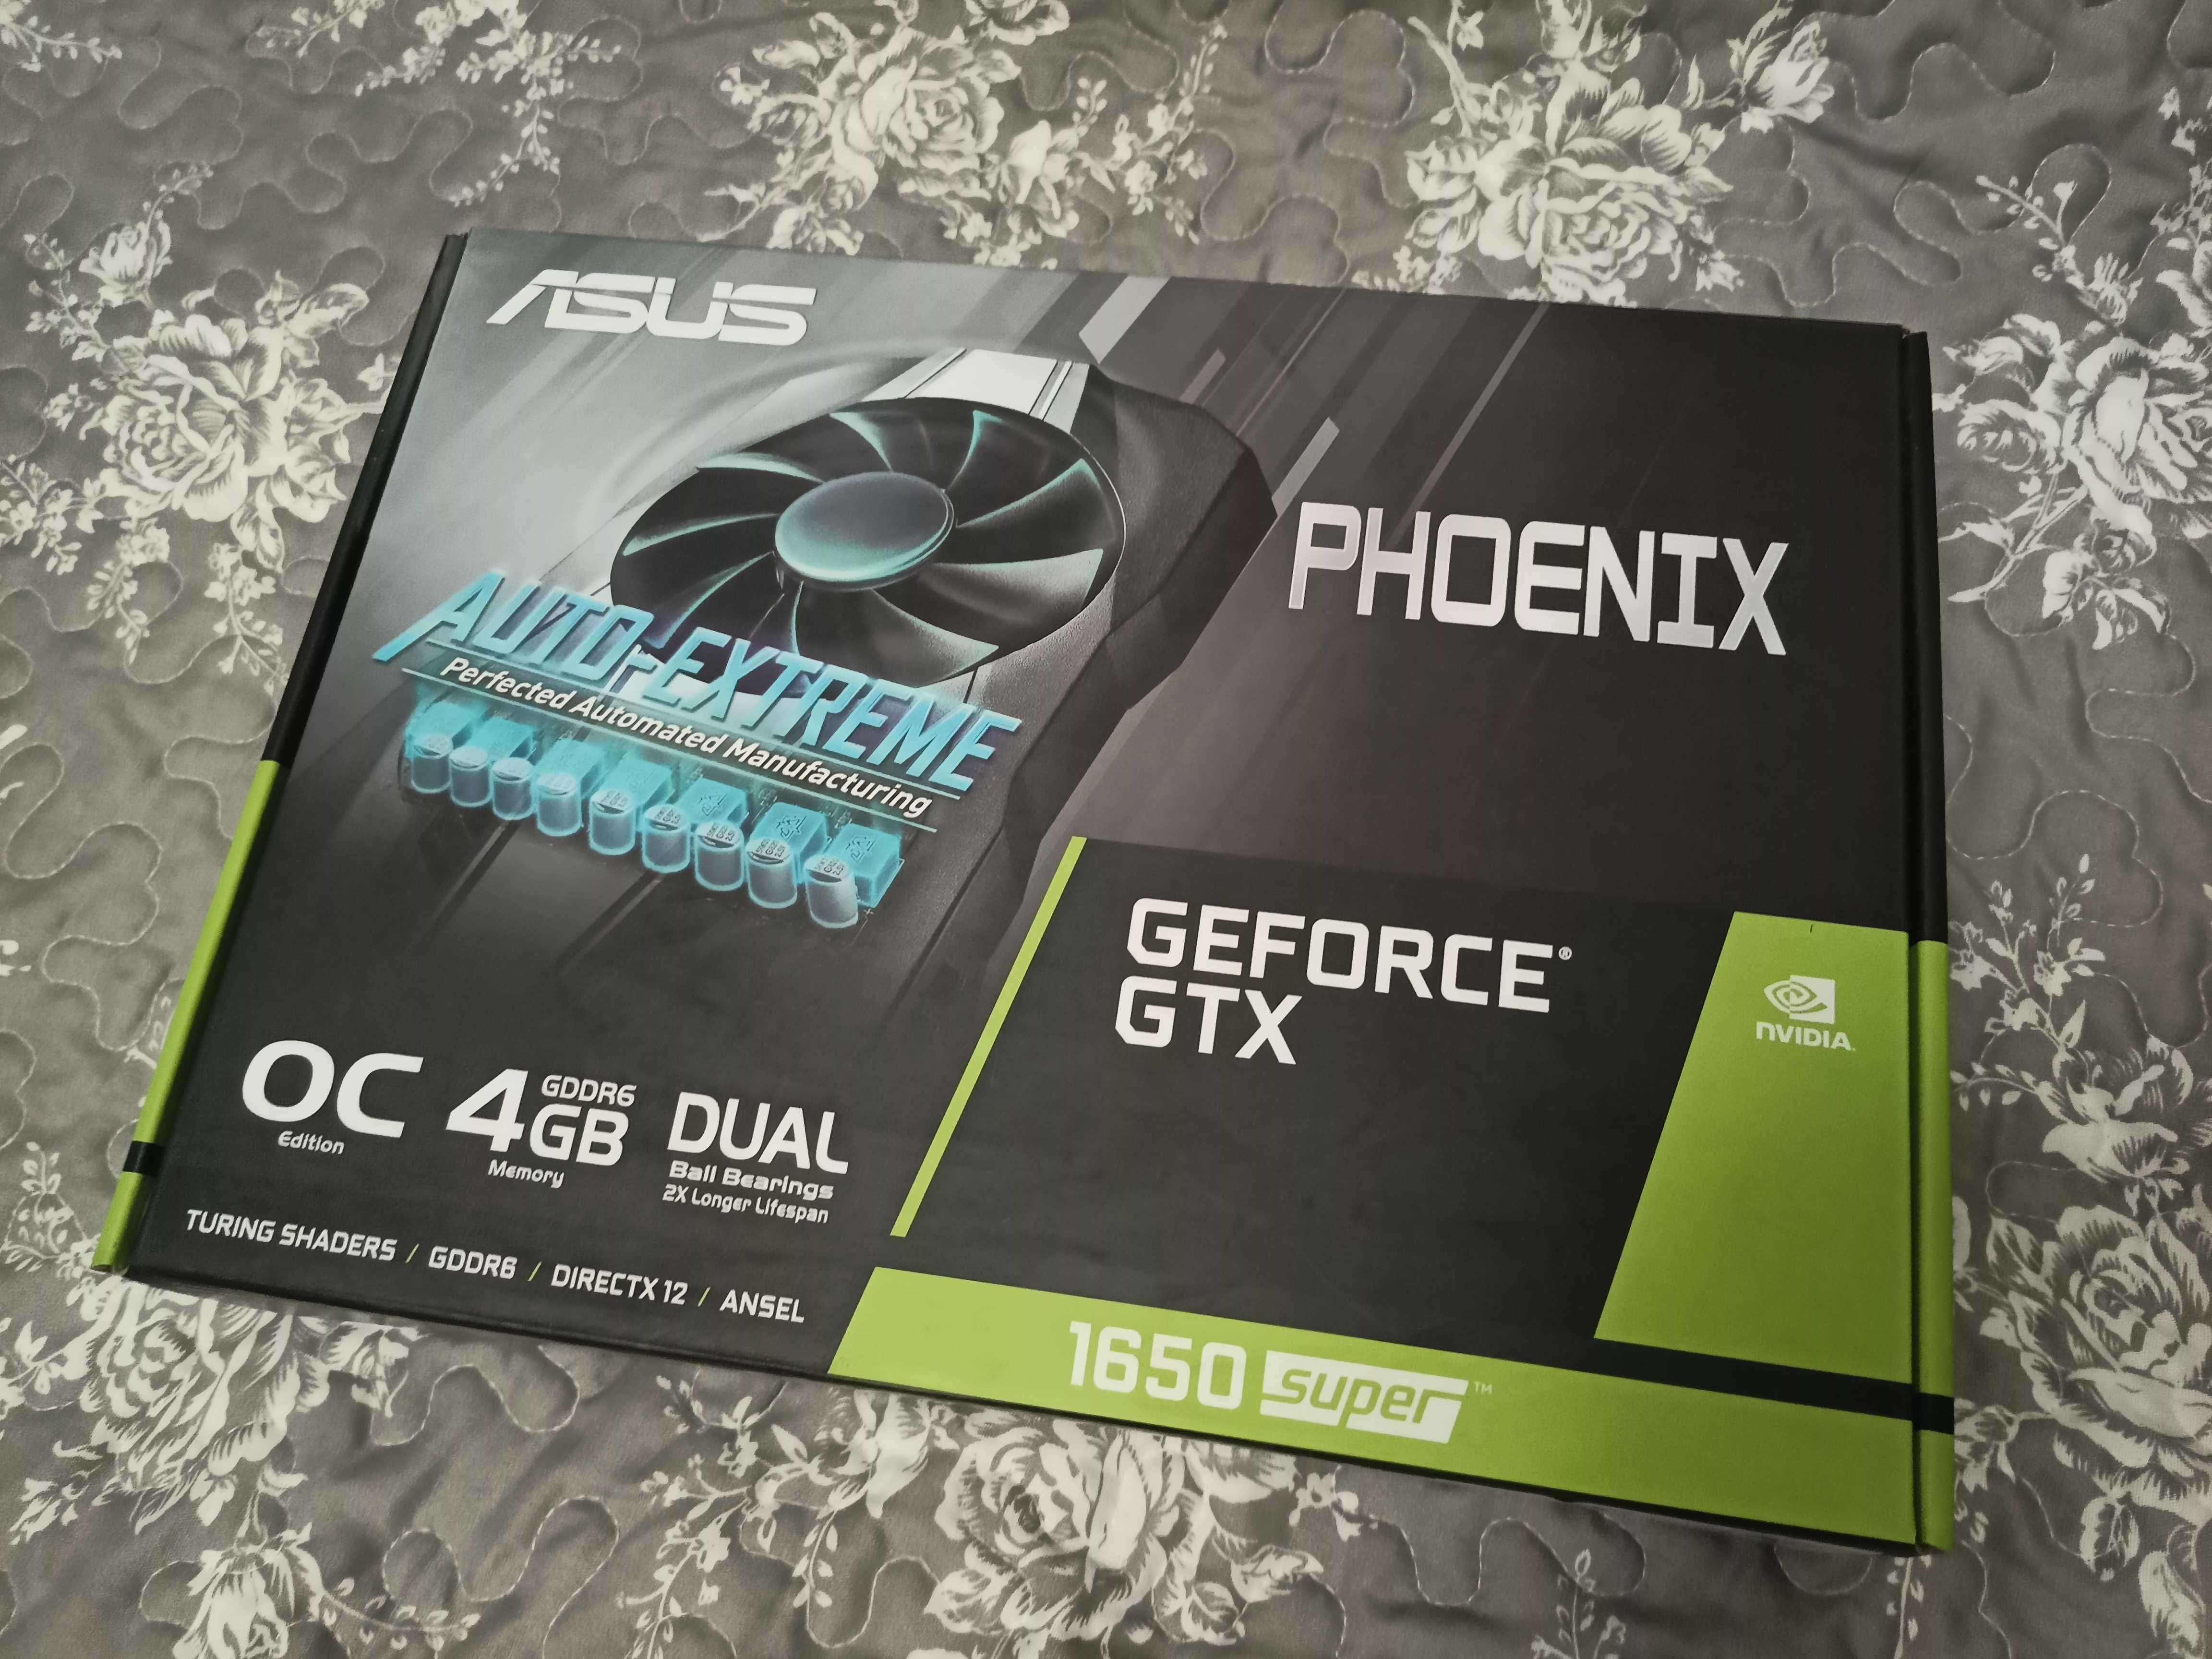 Видеокарта Asus Phoenix Nvidia GTX 1650 Super 4 GB